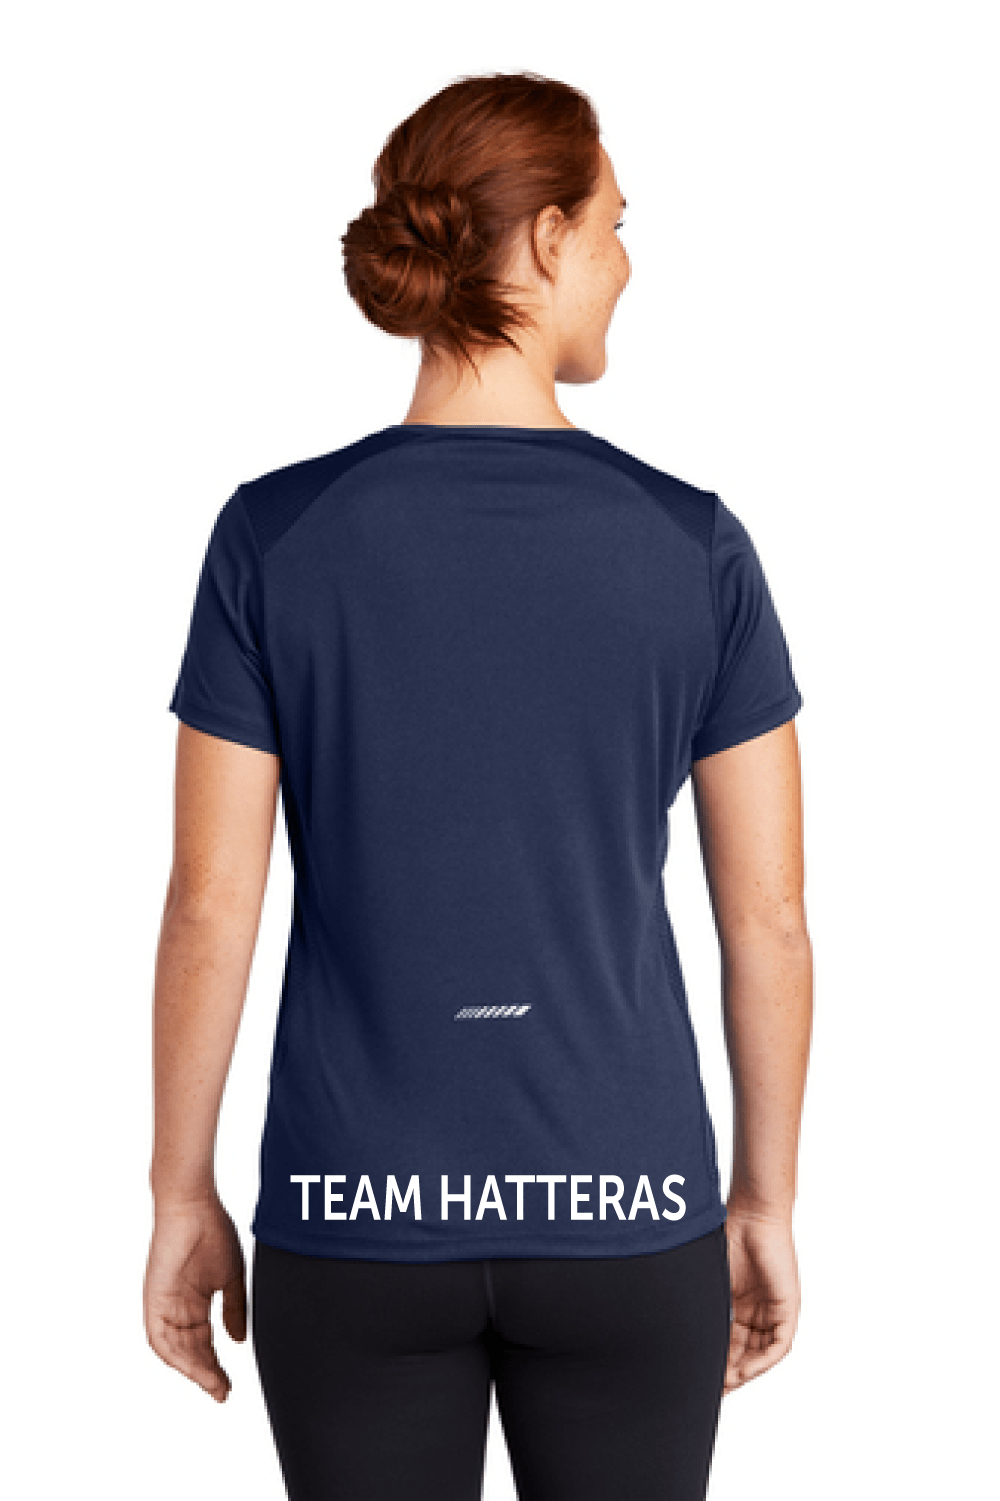 Hatteras Women's Scoop Neck Tee Signature Lacrosse